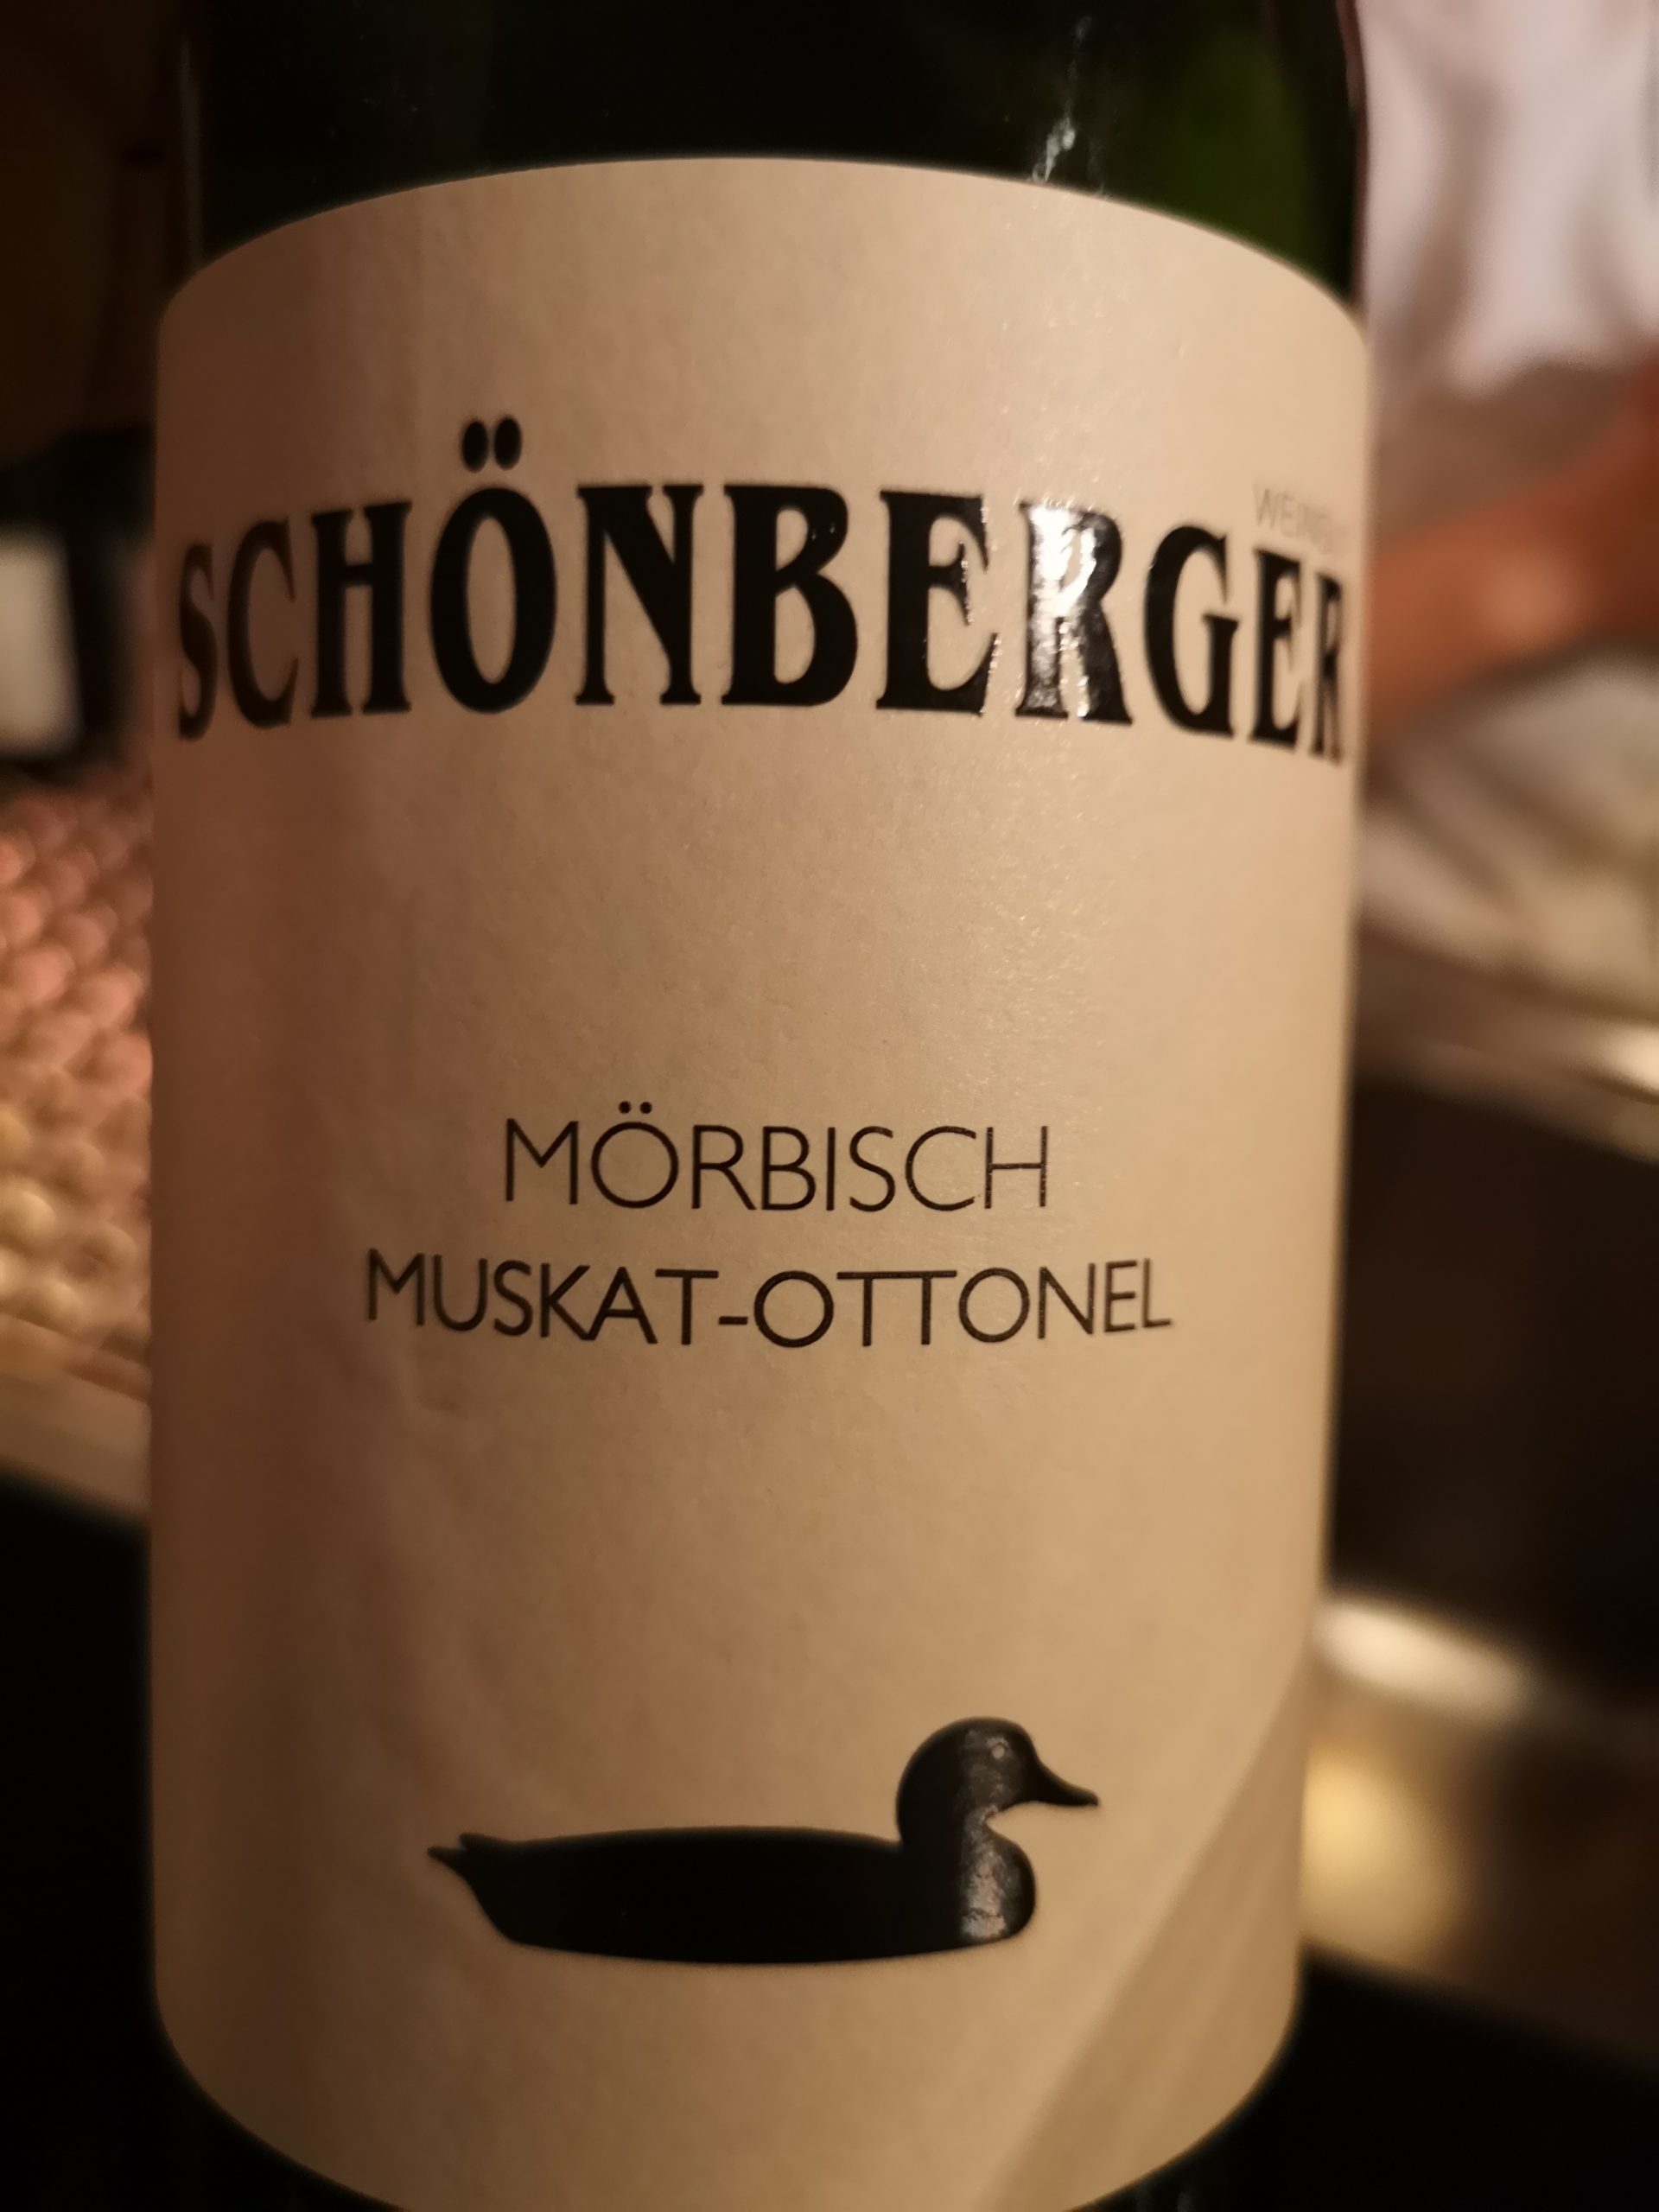 2017 Muskat-Ottonel Mörbisch | Schönberger